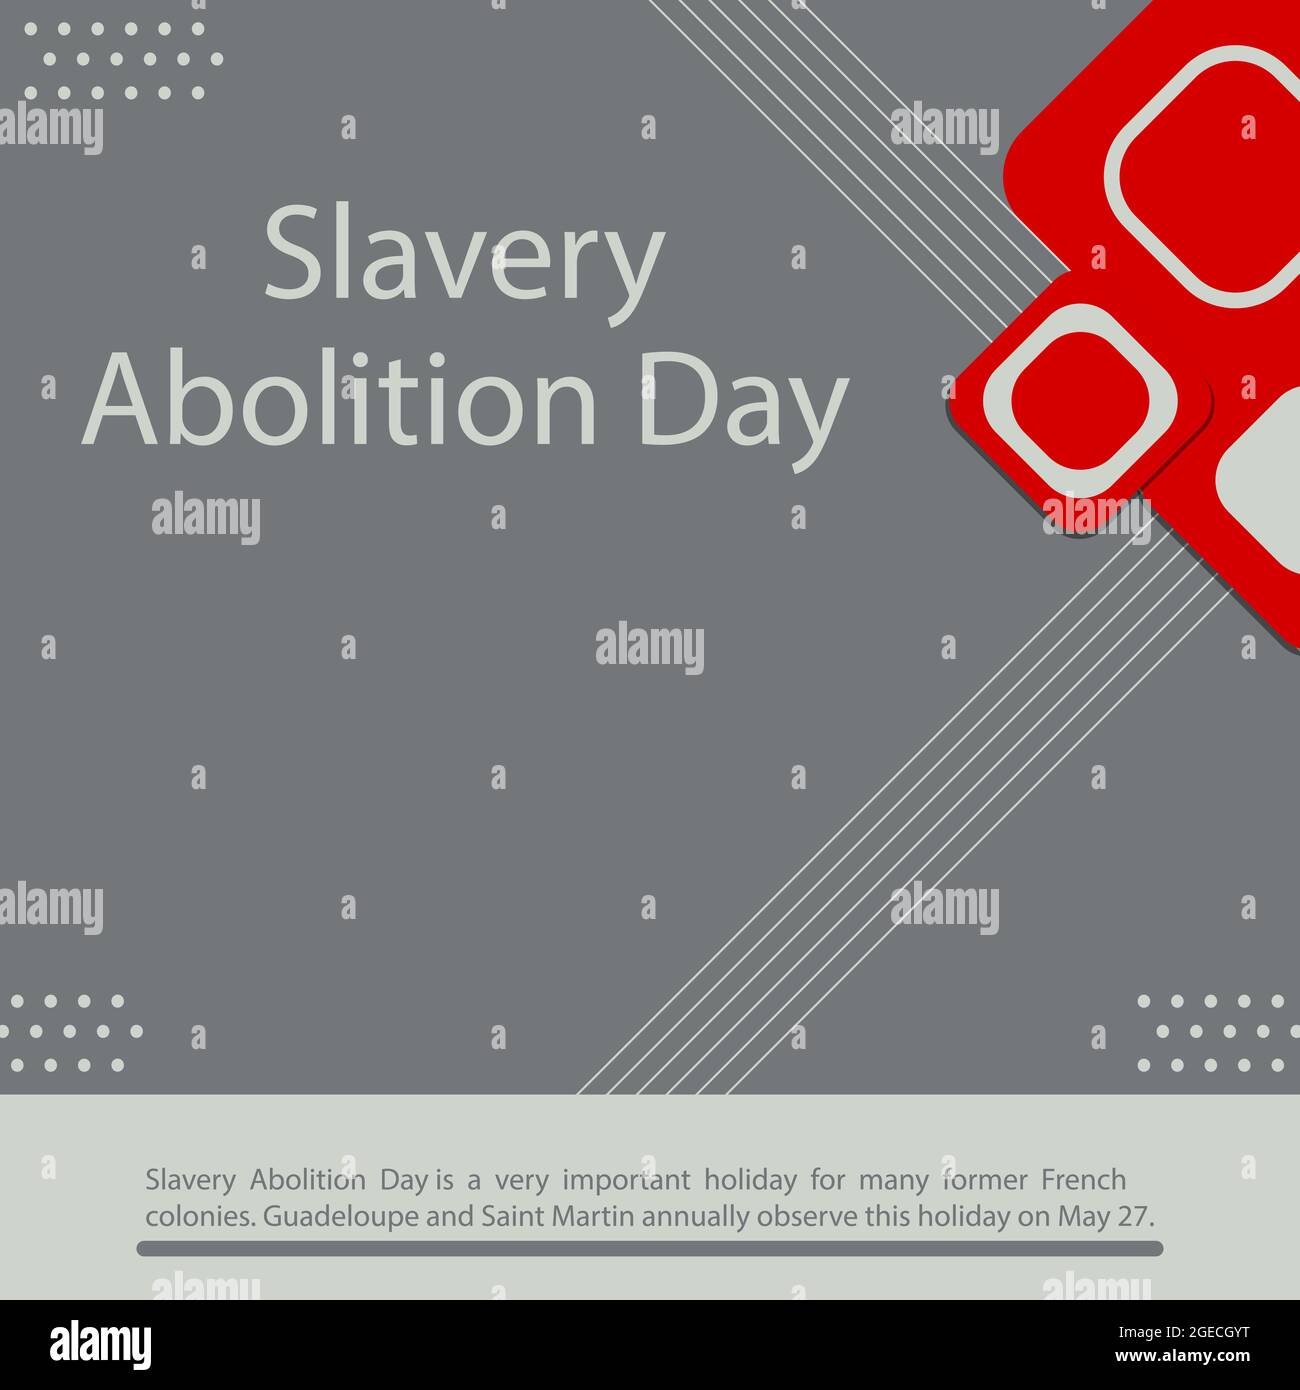 La Giornata dell'abolizione della schiavitù è una festa molto importante per molte ex colonie francesi. Guadalupa e Saint Martin osservano annualmente questa festa il 27 maggio Illustrazione Vettoriale